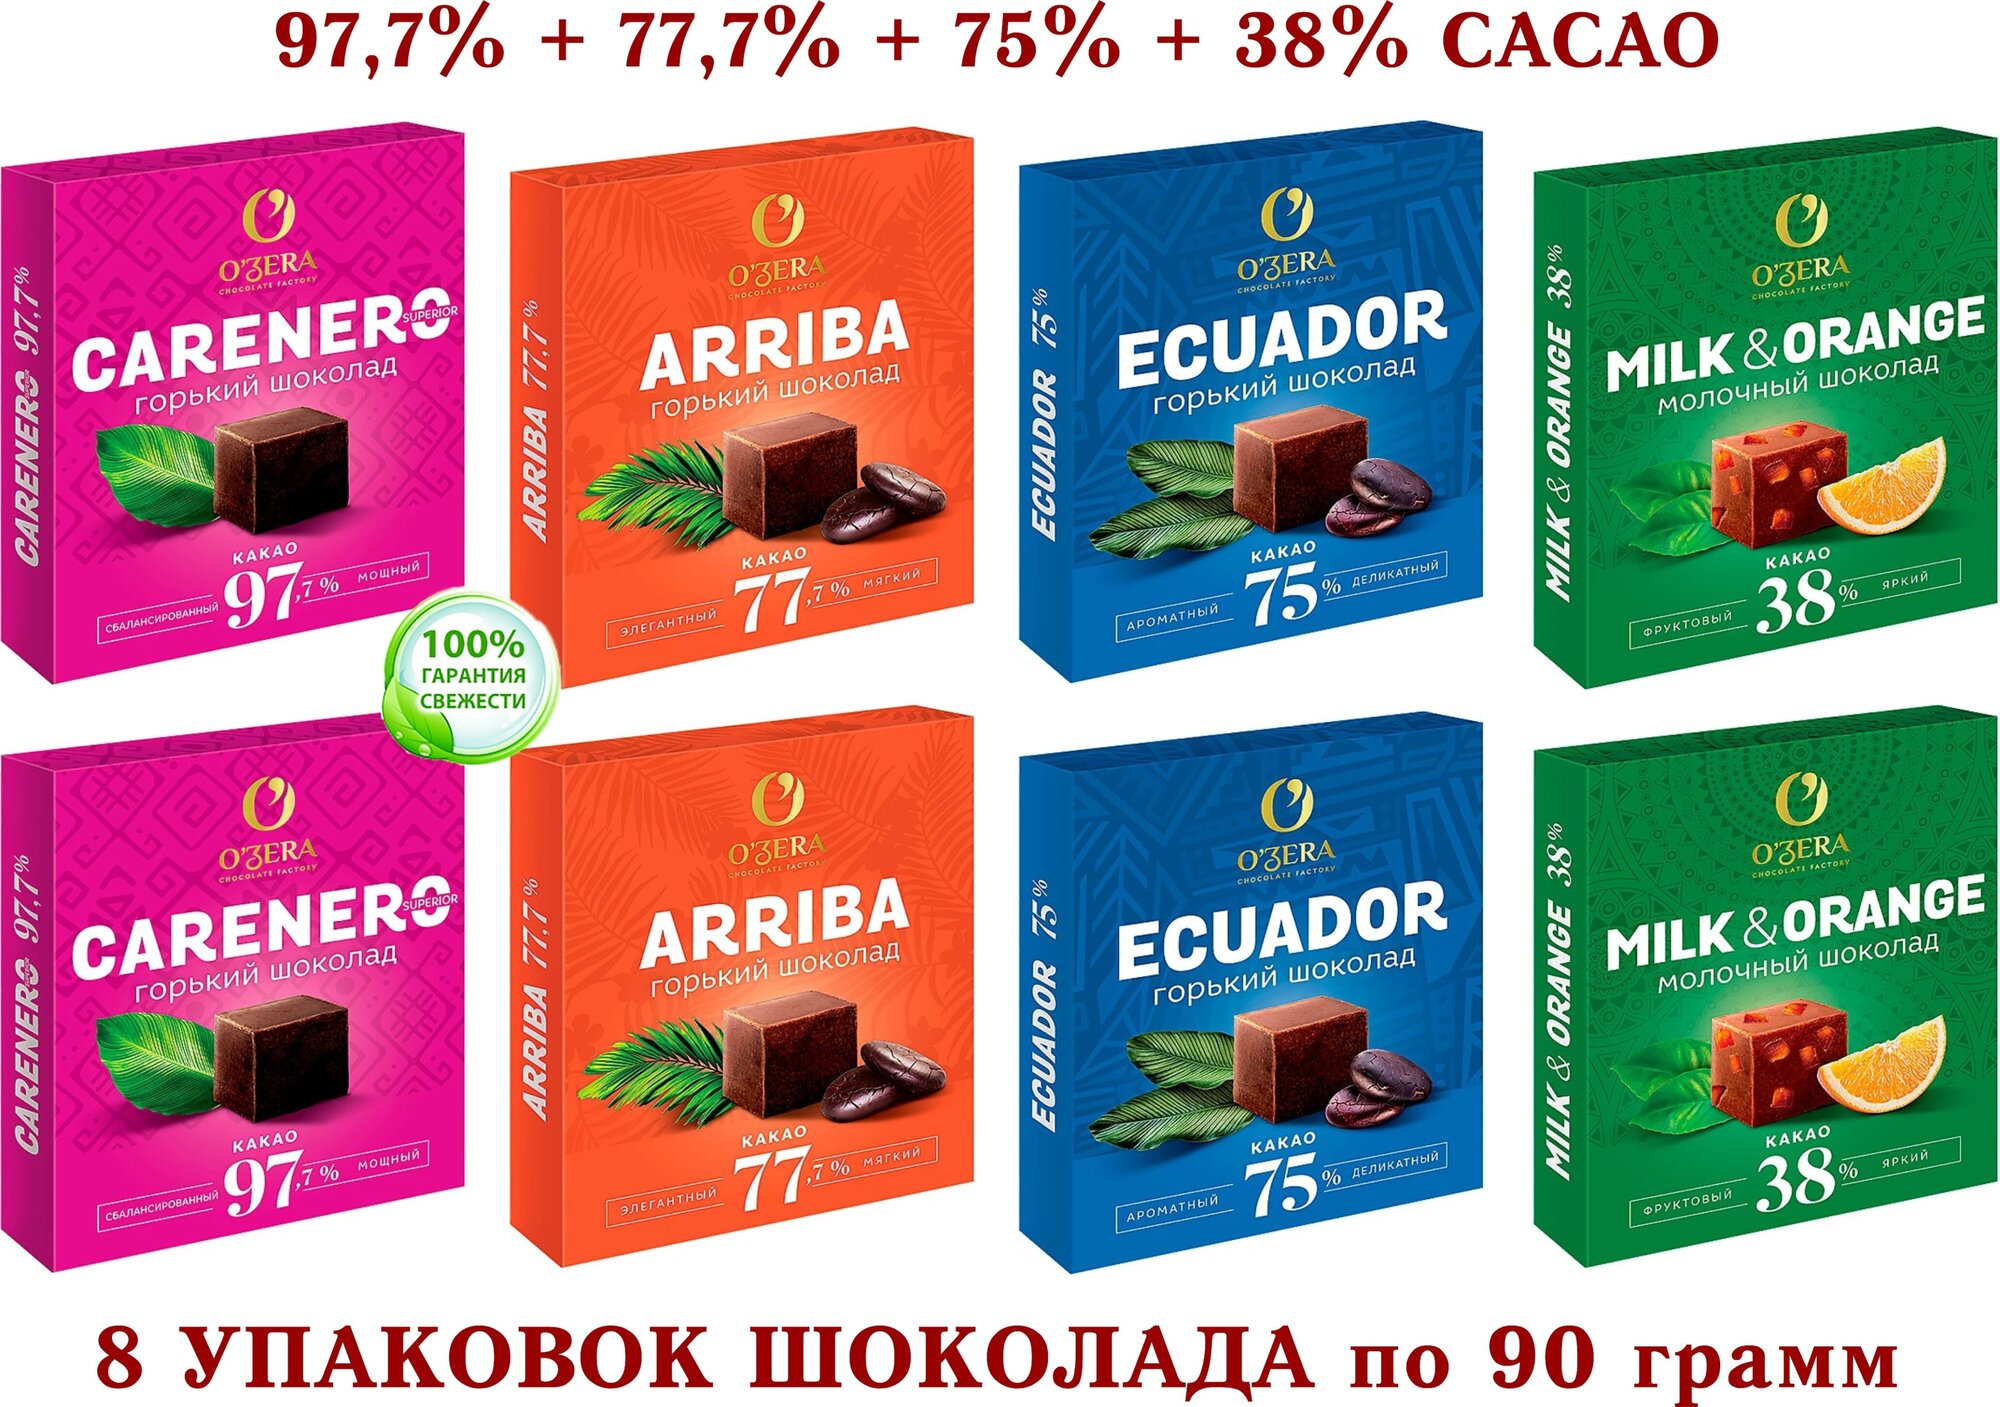 Шоколад OZERA ассорти-Carenero SuperioR 97,7 %+молочный с апельсином OZera Milk&Orange 38%+ECUADOR 75%+Arriba-77,7%-KDV-8*90 гр.